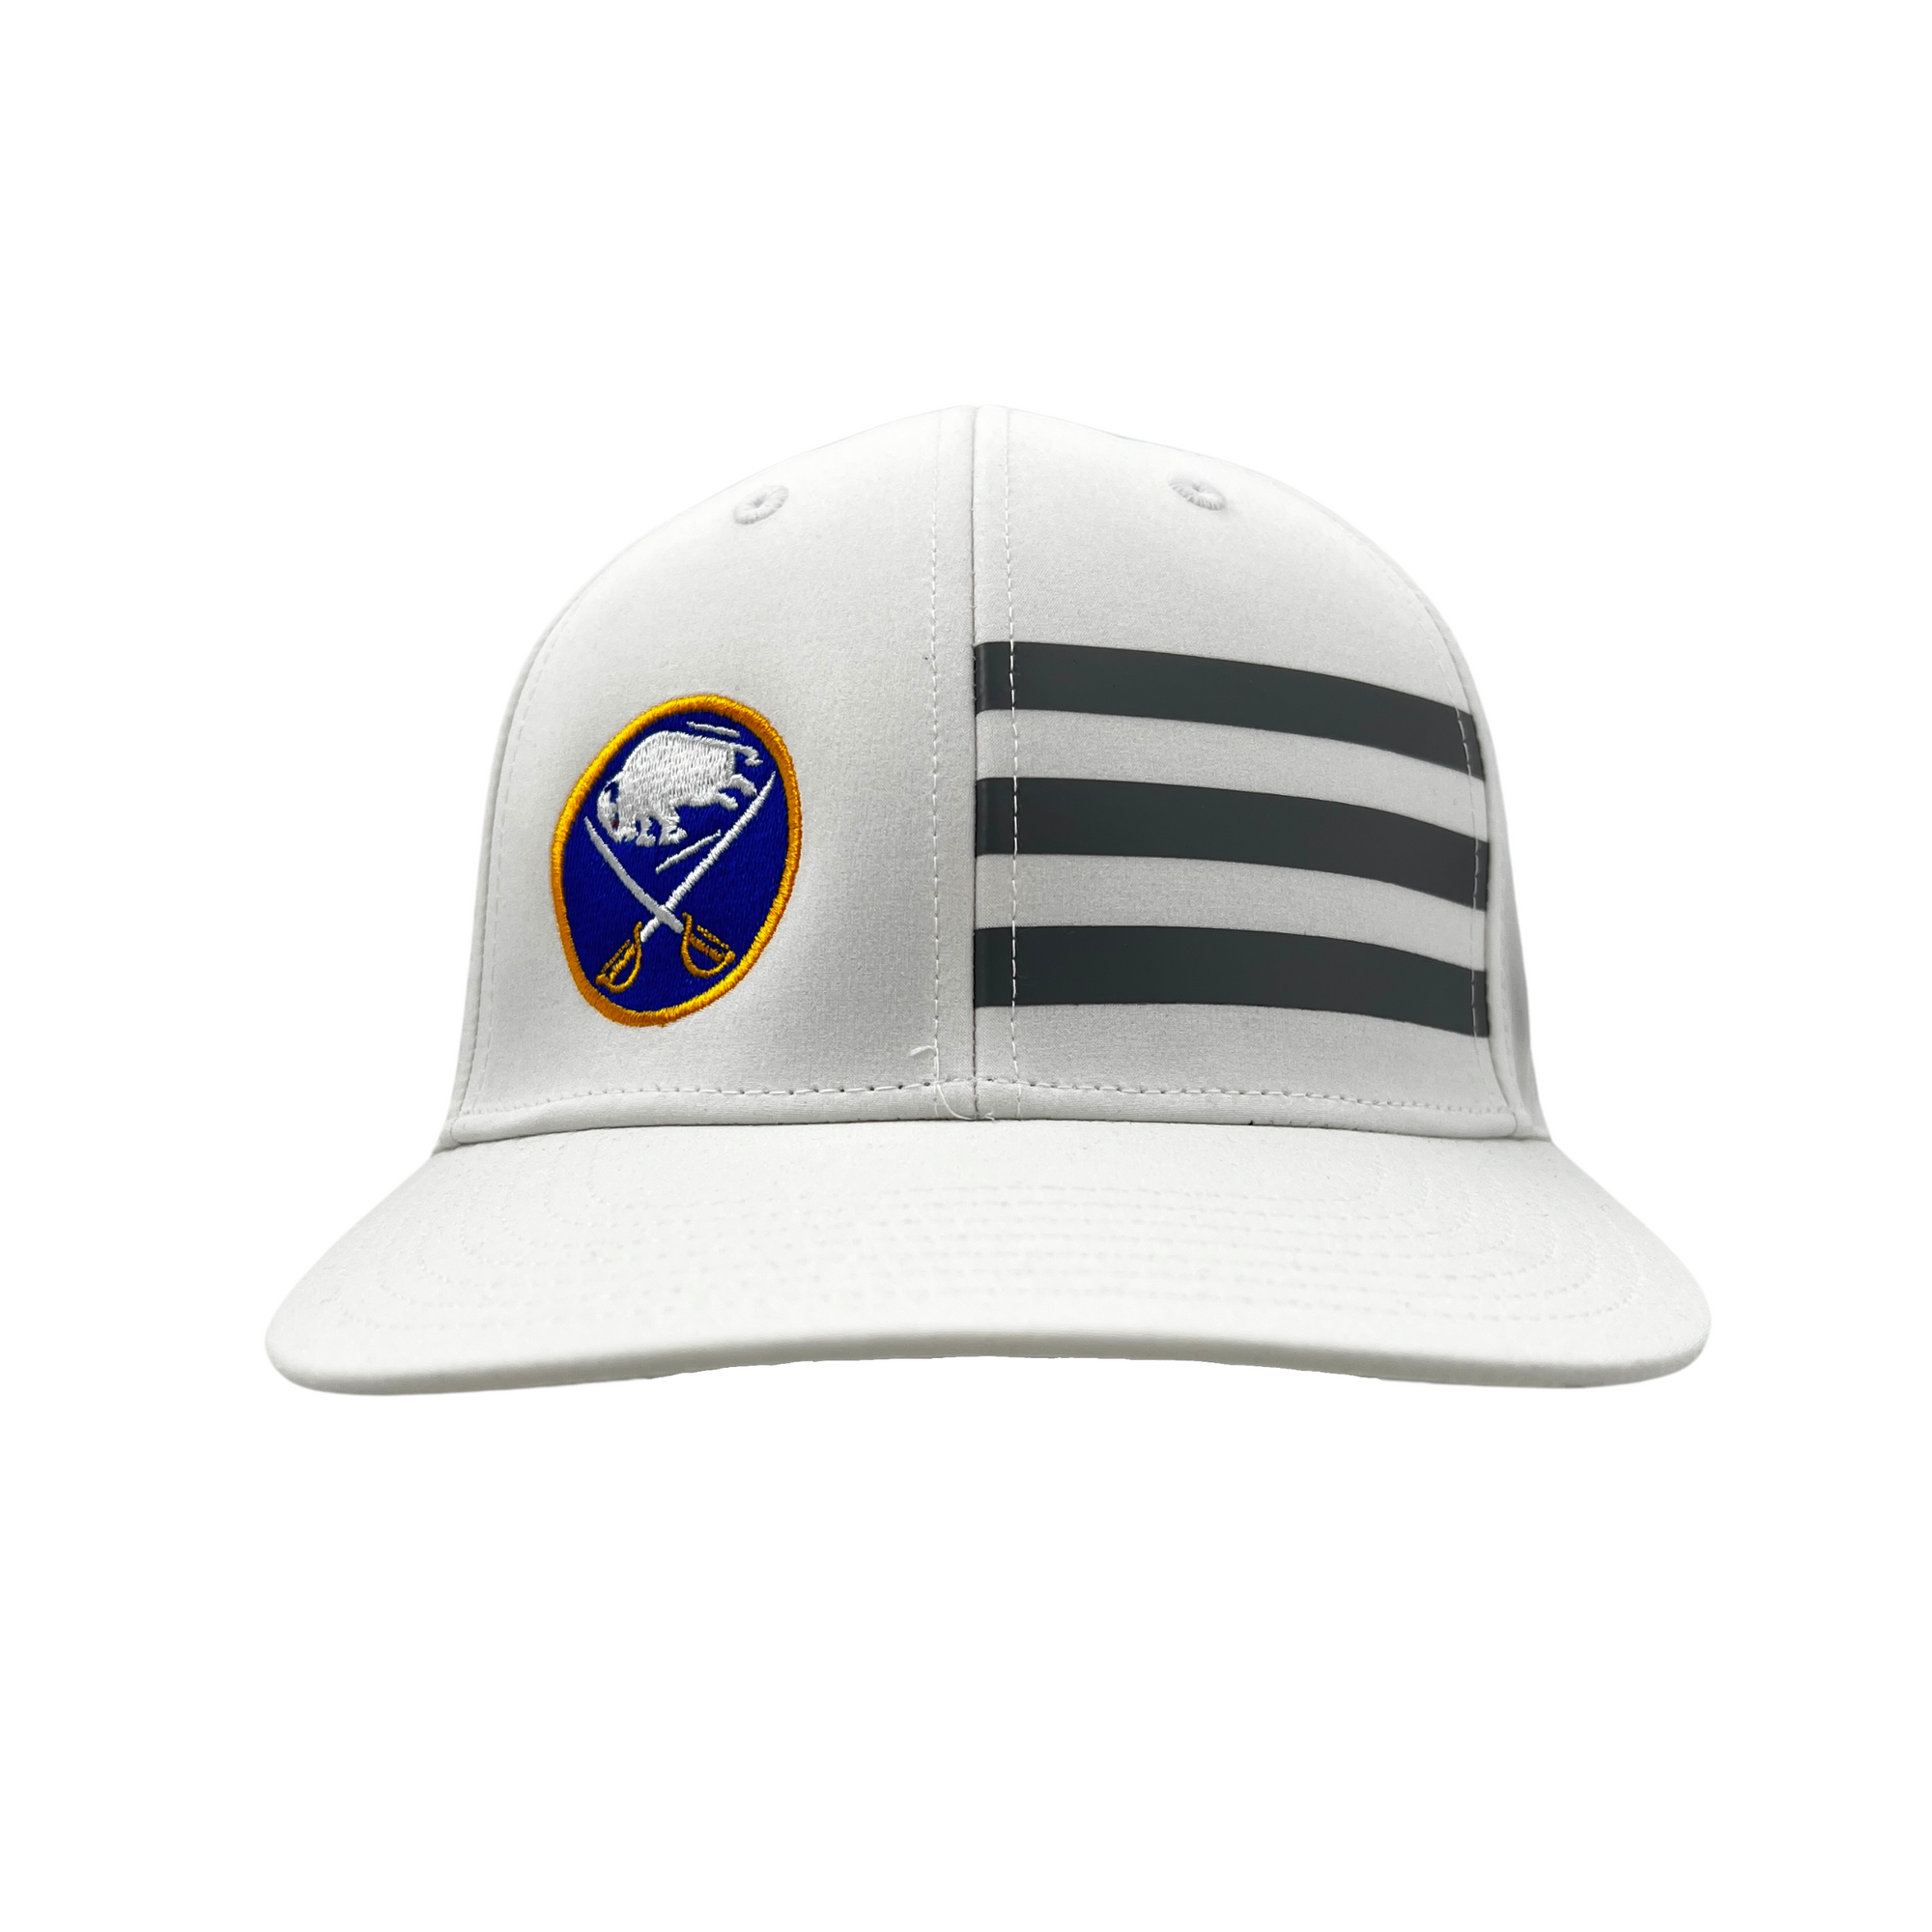 Adidas Golf Sabres Blue & Gold Logo Adjustable Hat